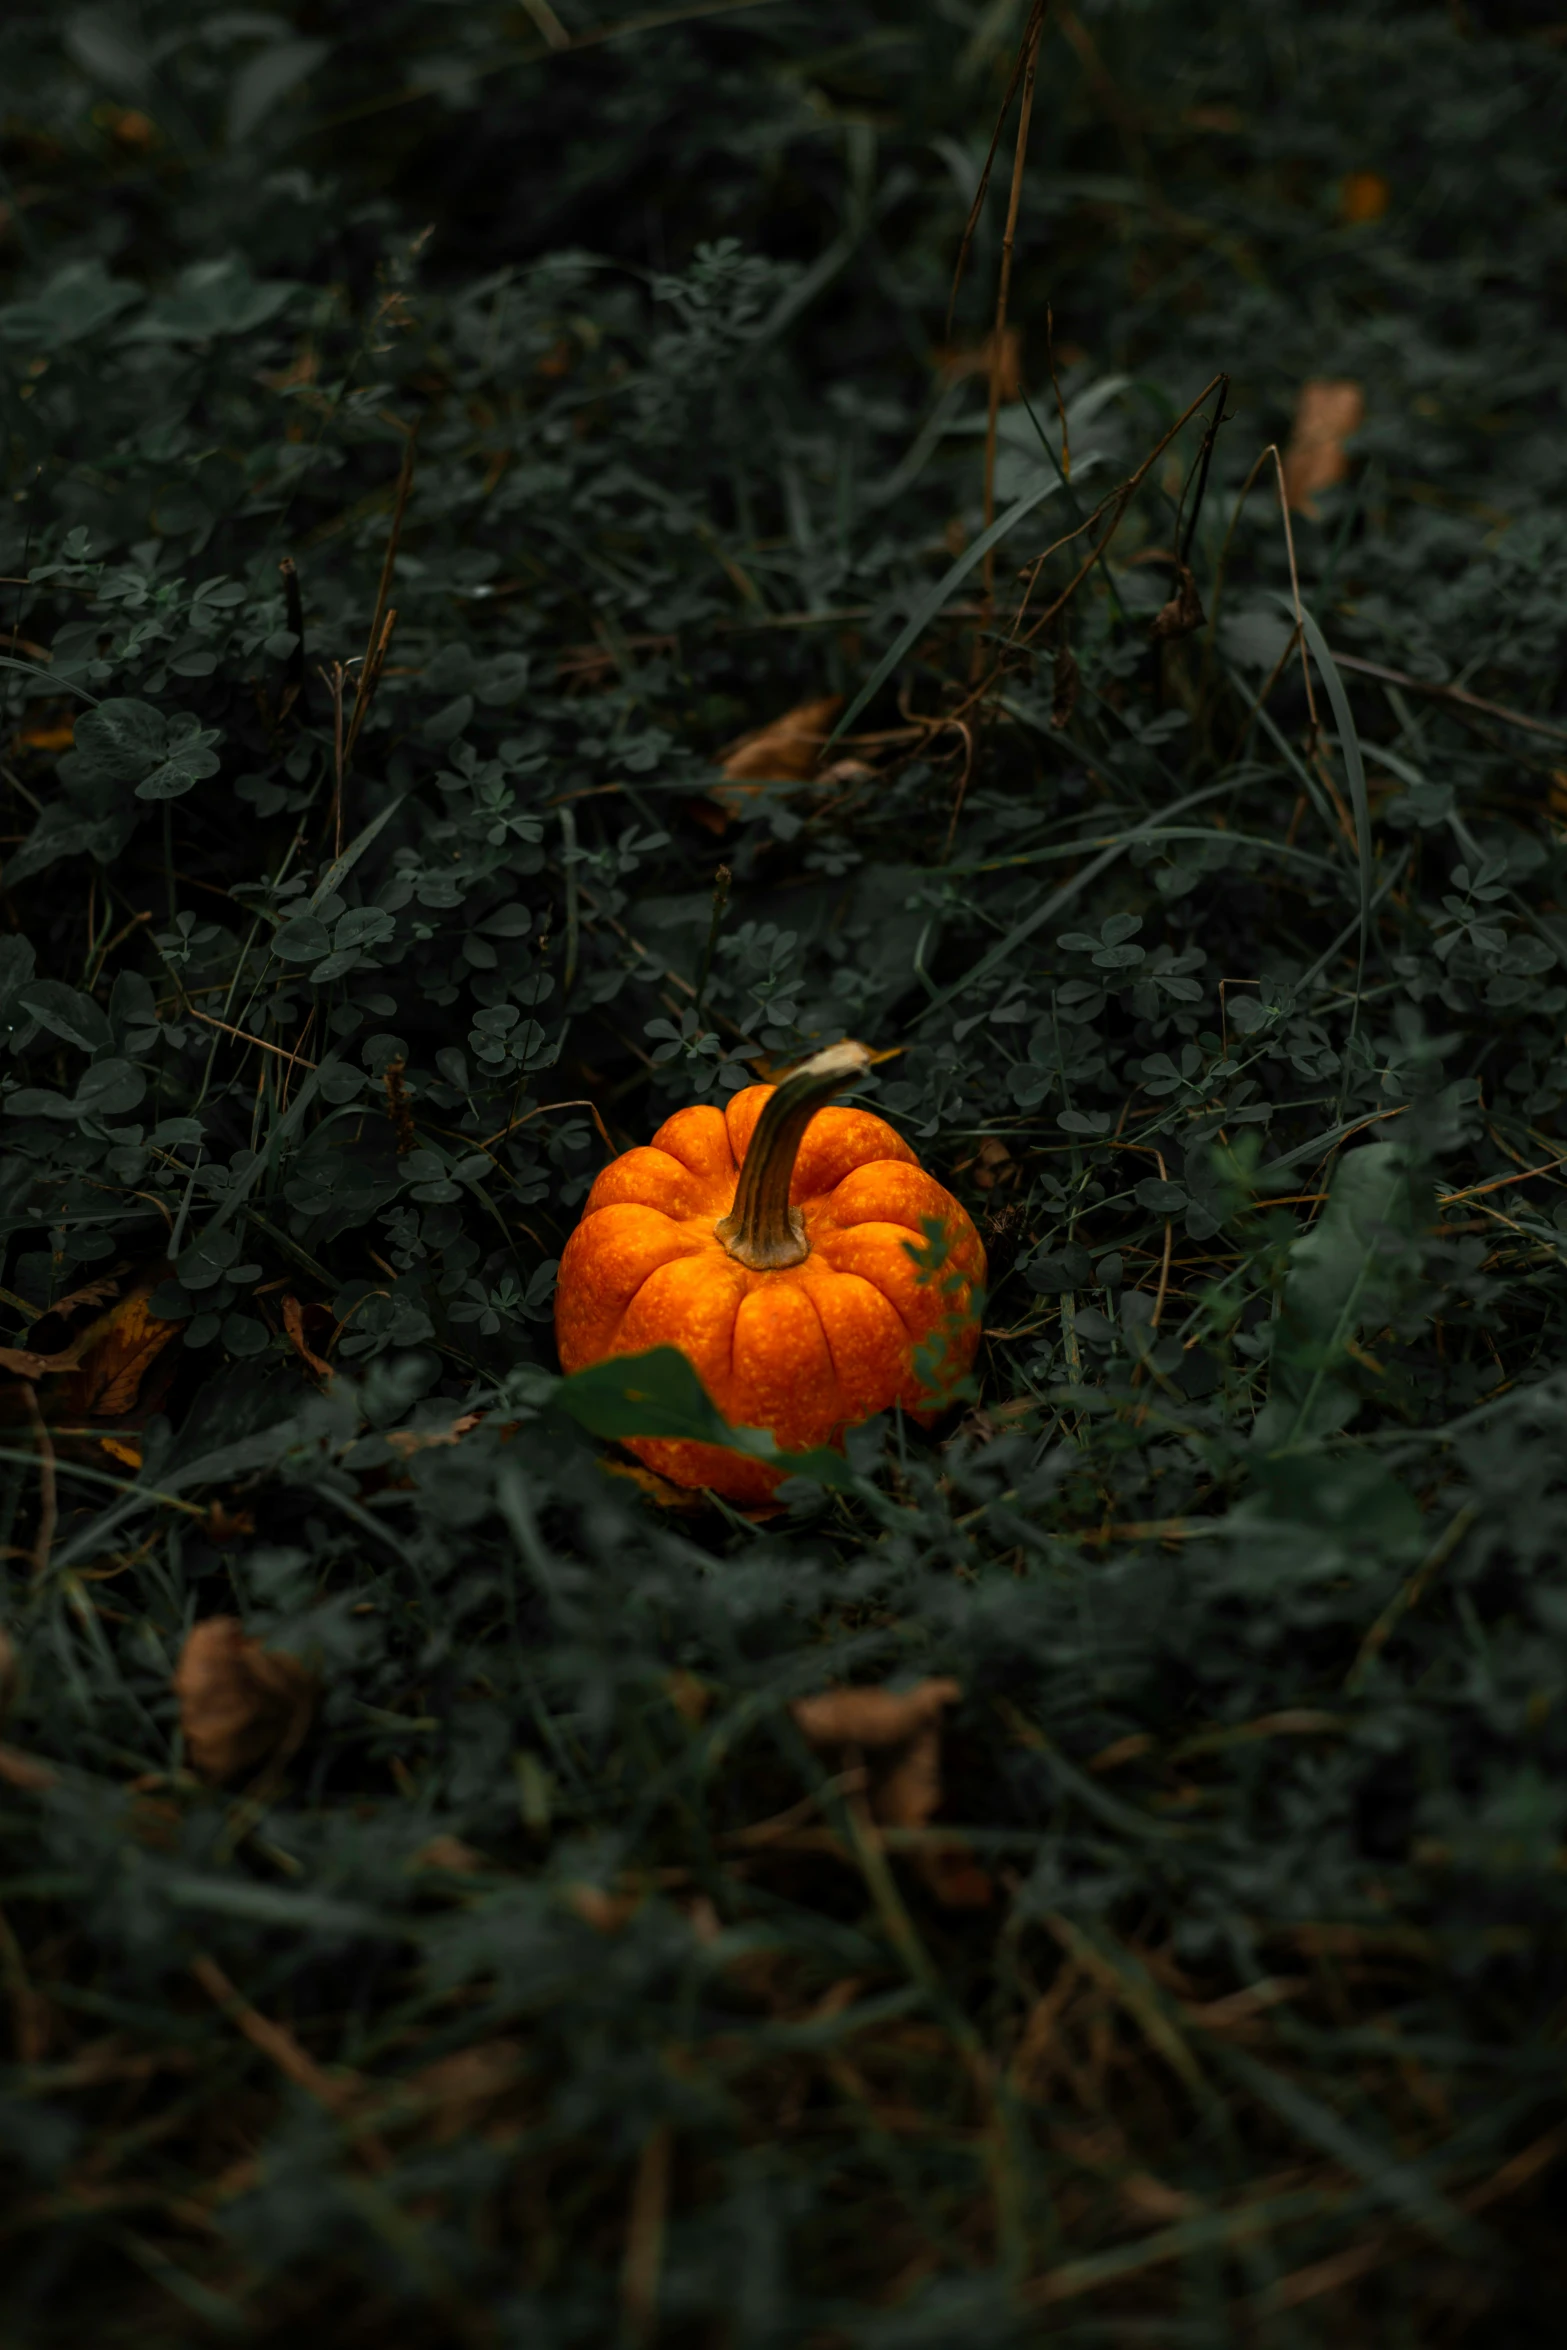 an orange pumpkin in the green grass